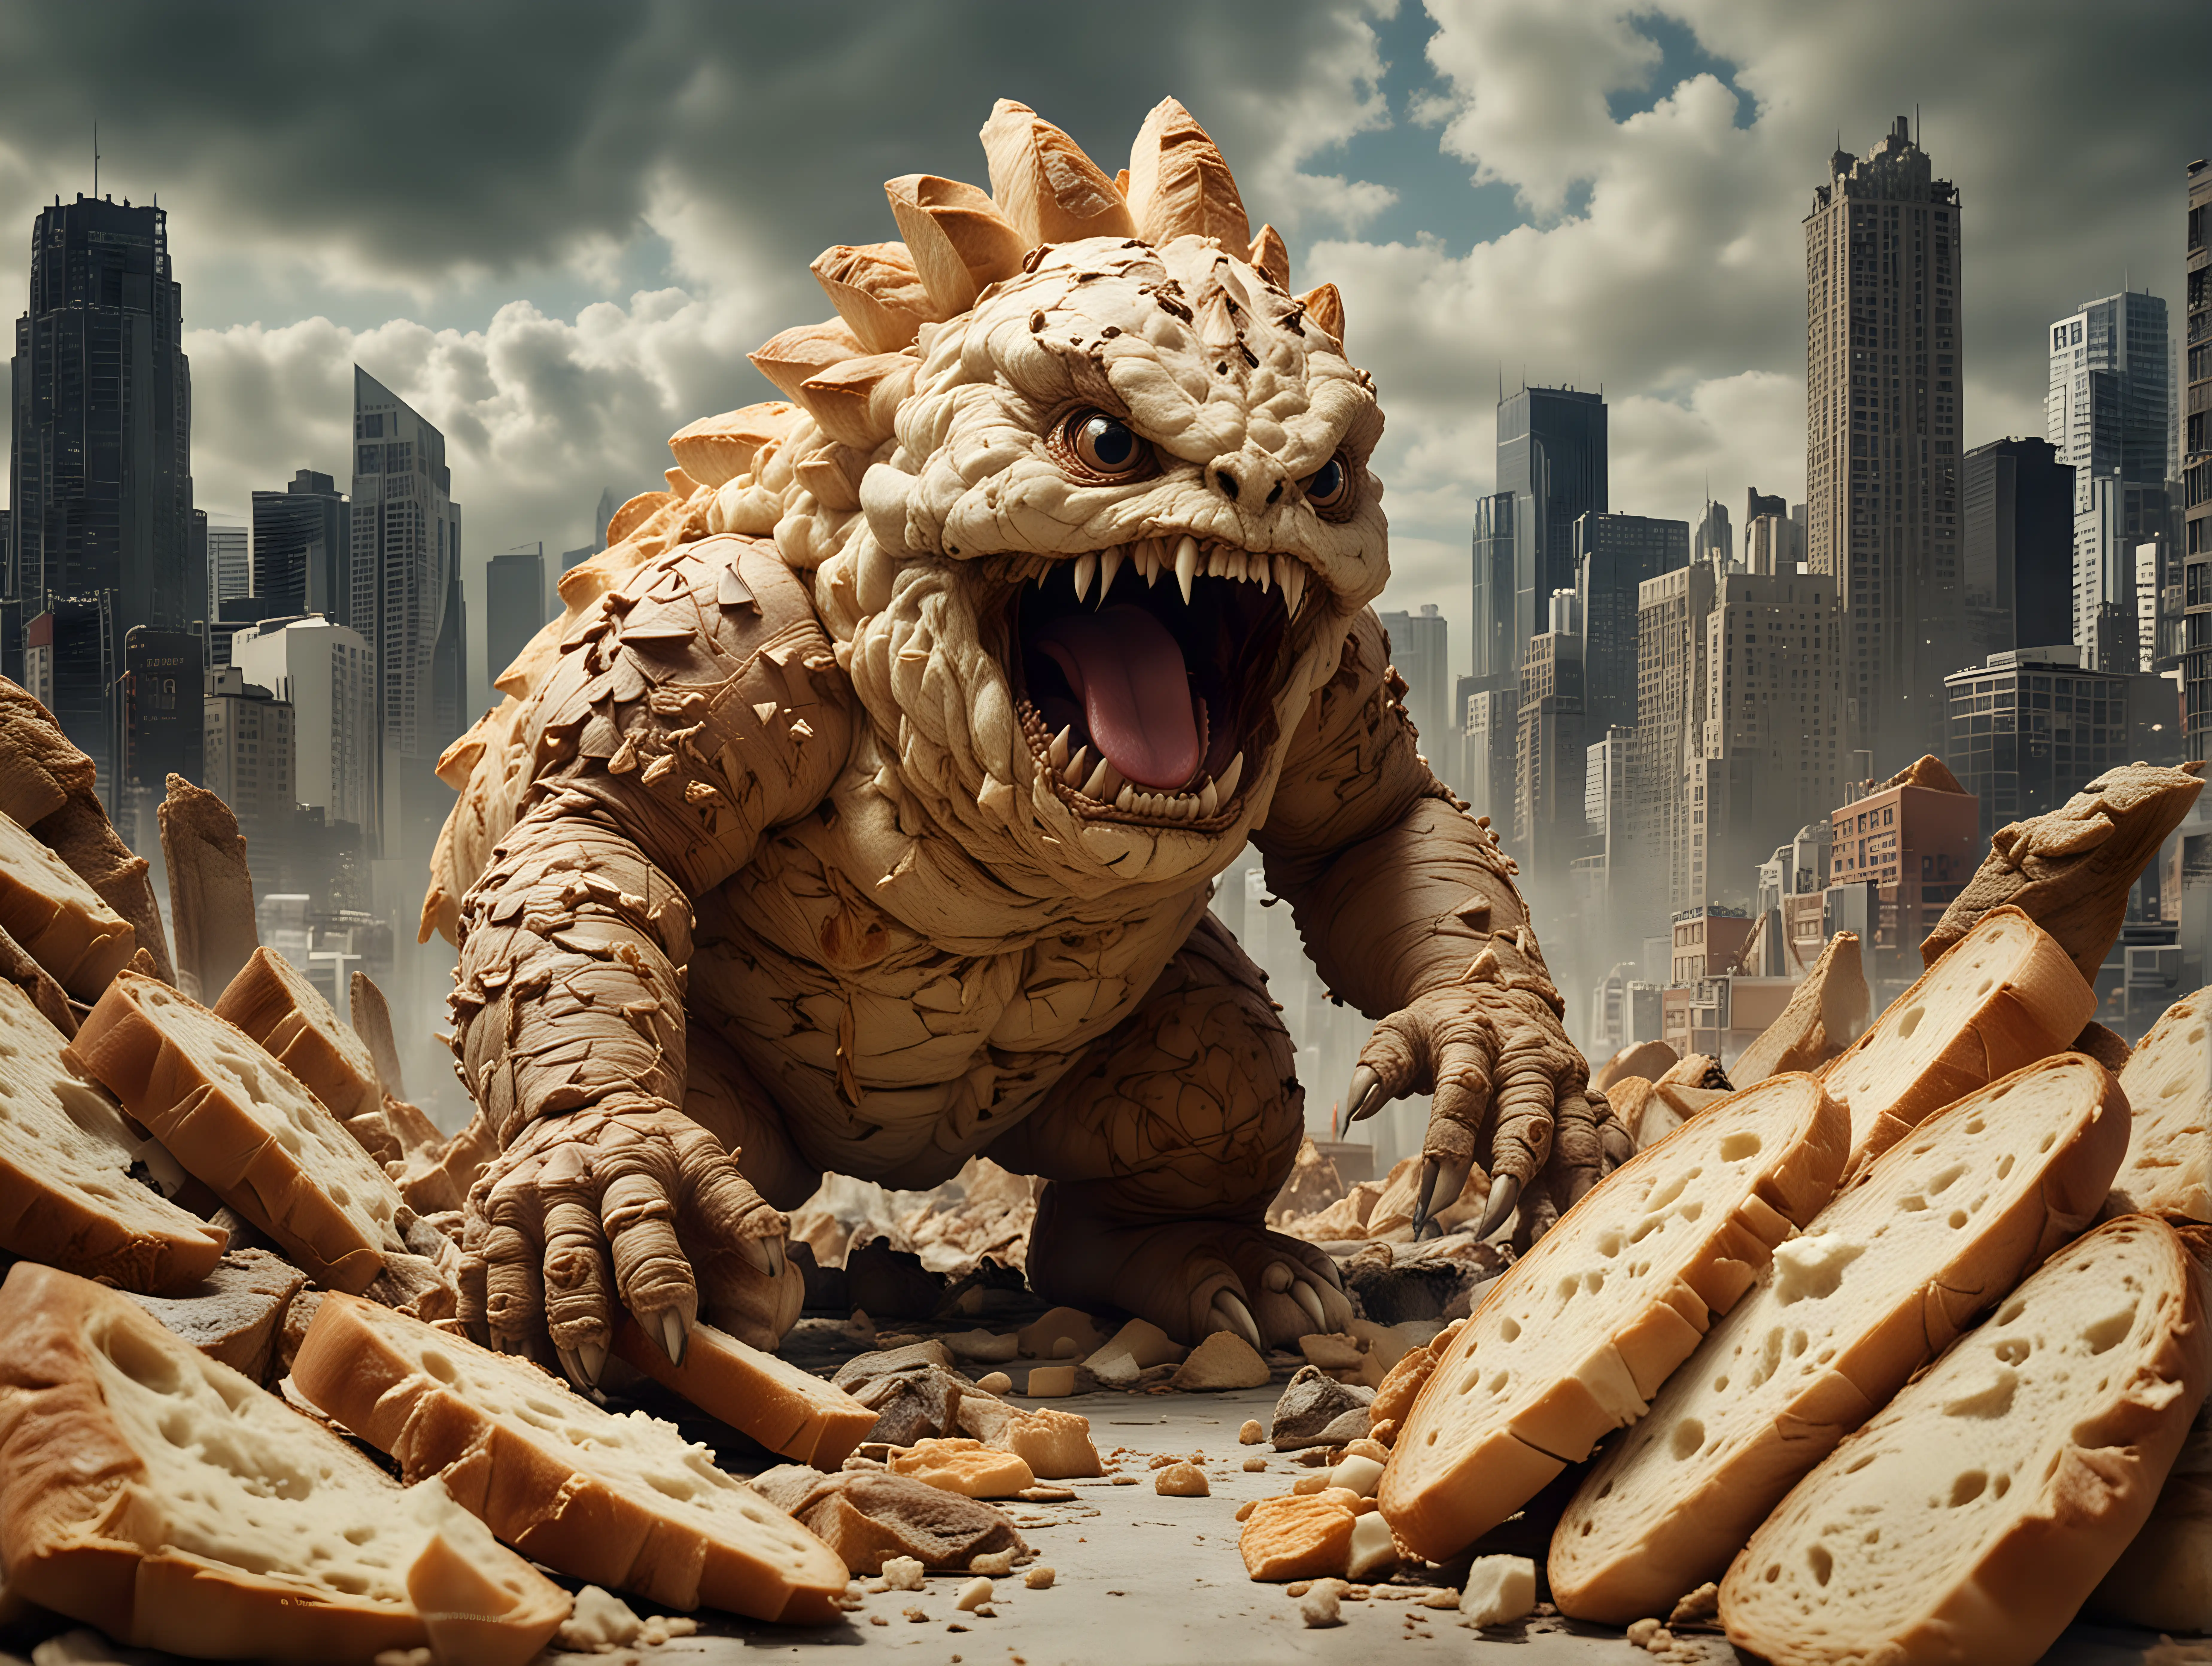 Sourdough Bread Monster Kaiju Destroying City in Epic War Scene